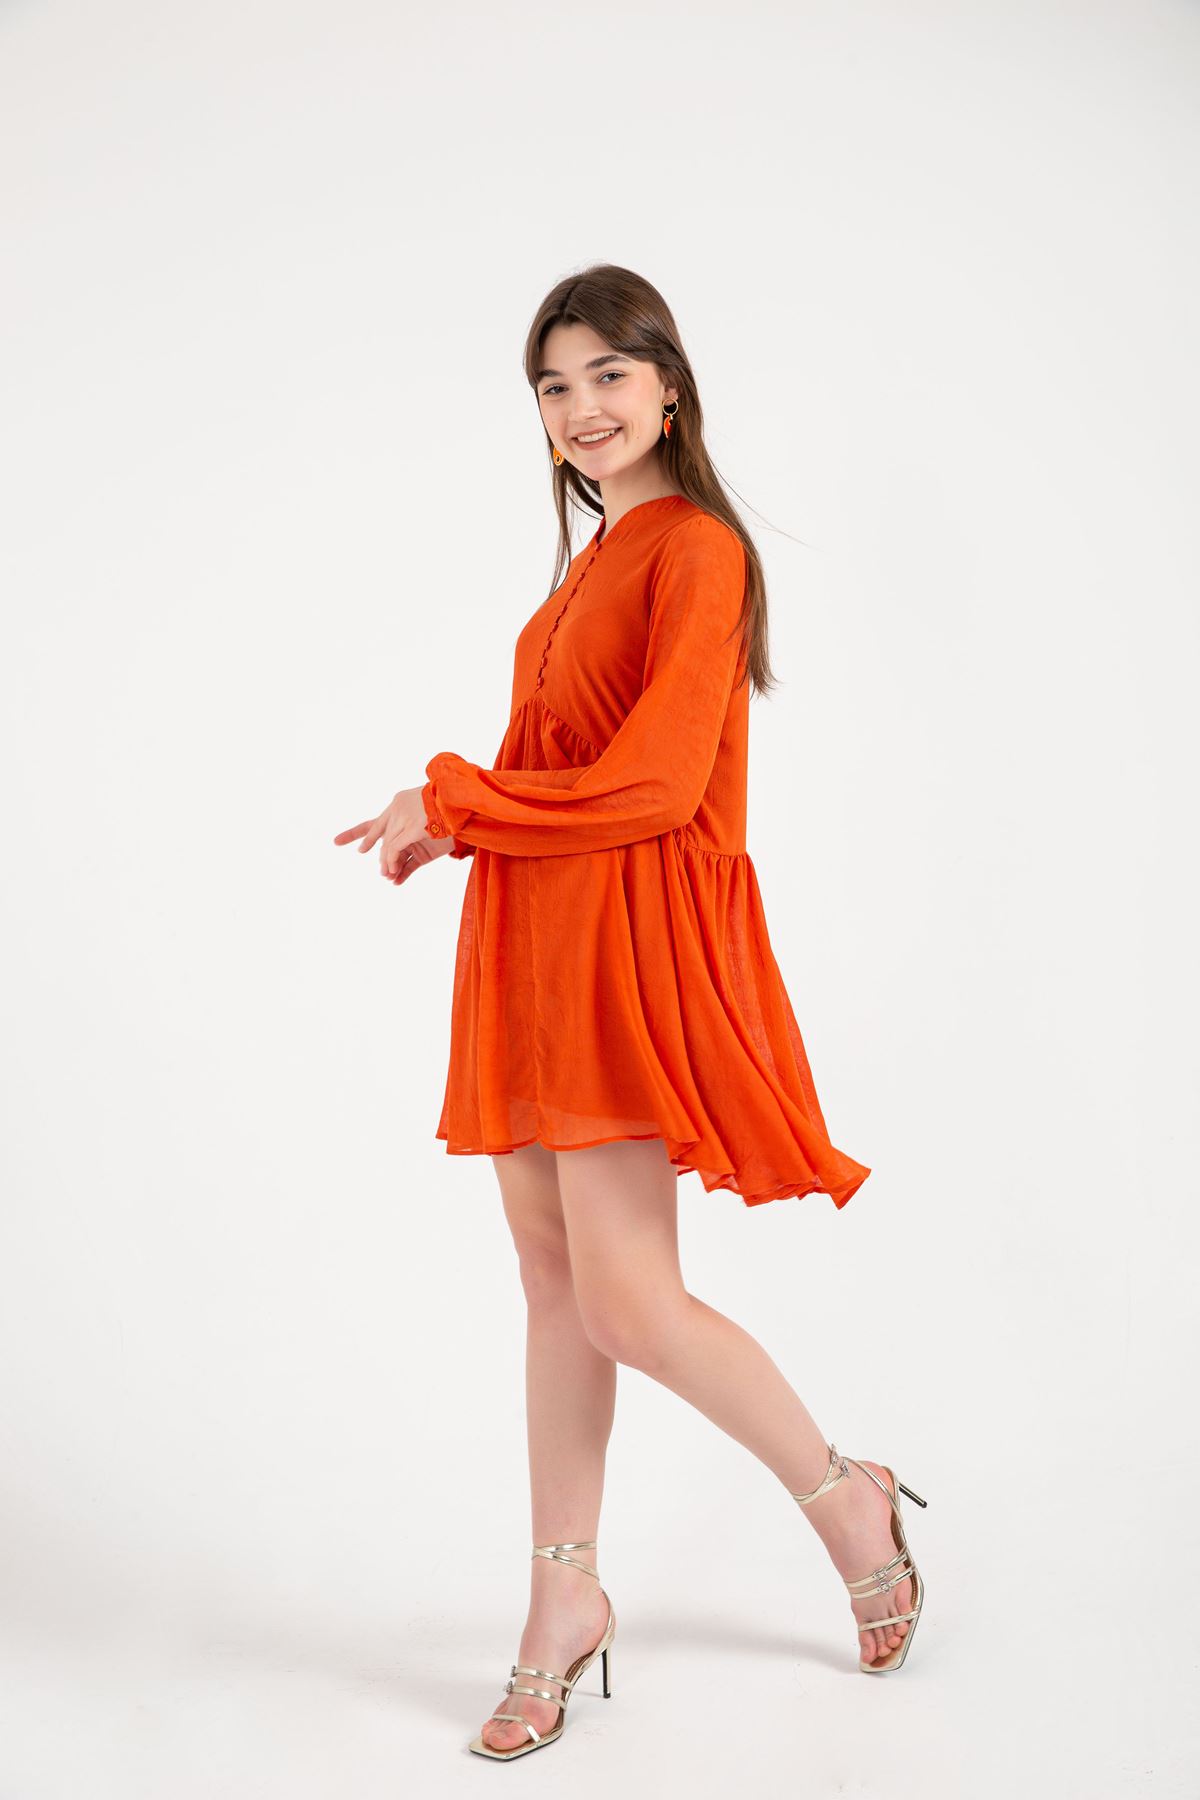 Chiffon Fabric Band Neck Full Fit Women Dress - Orange